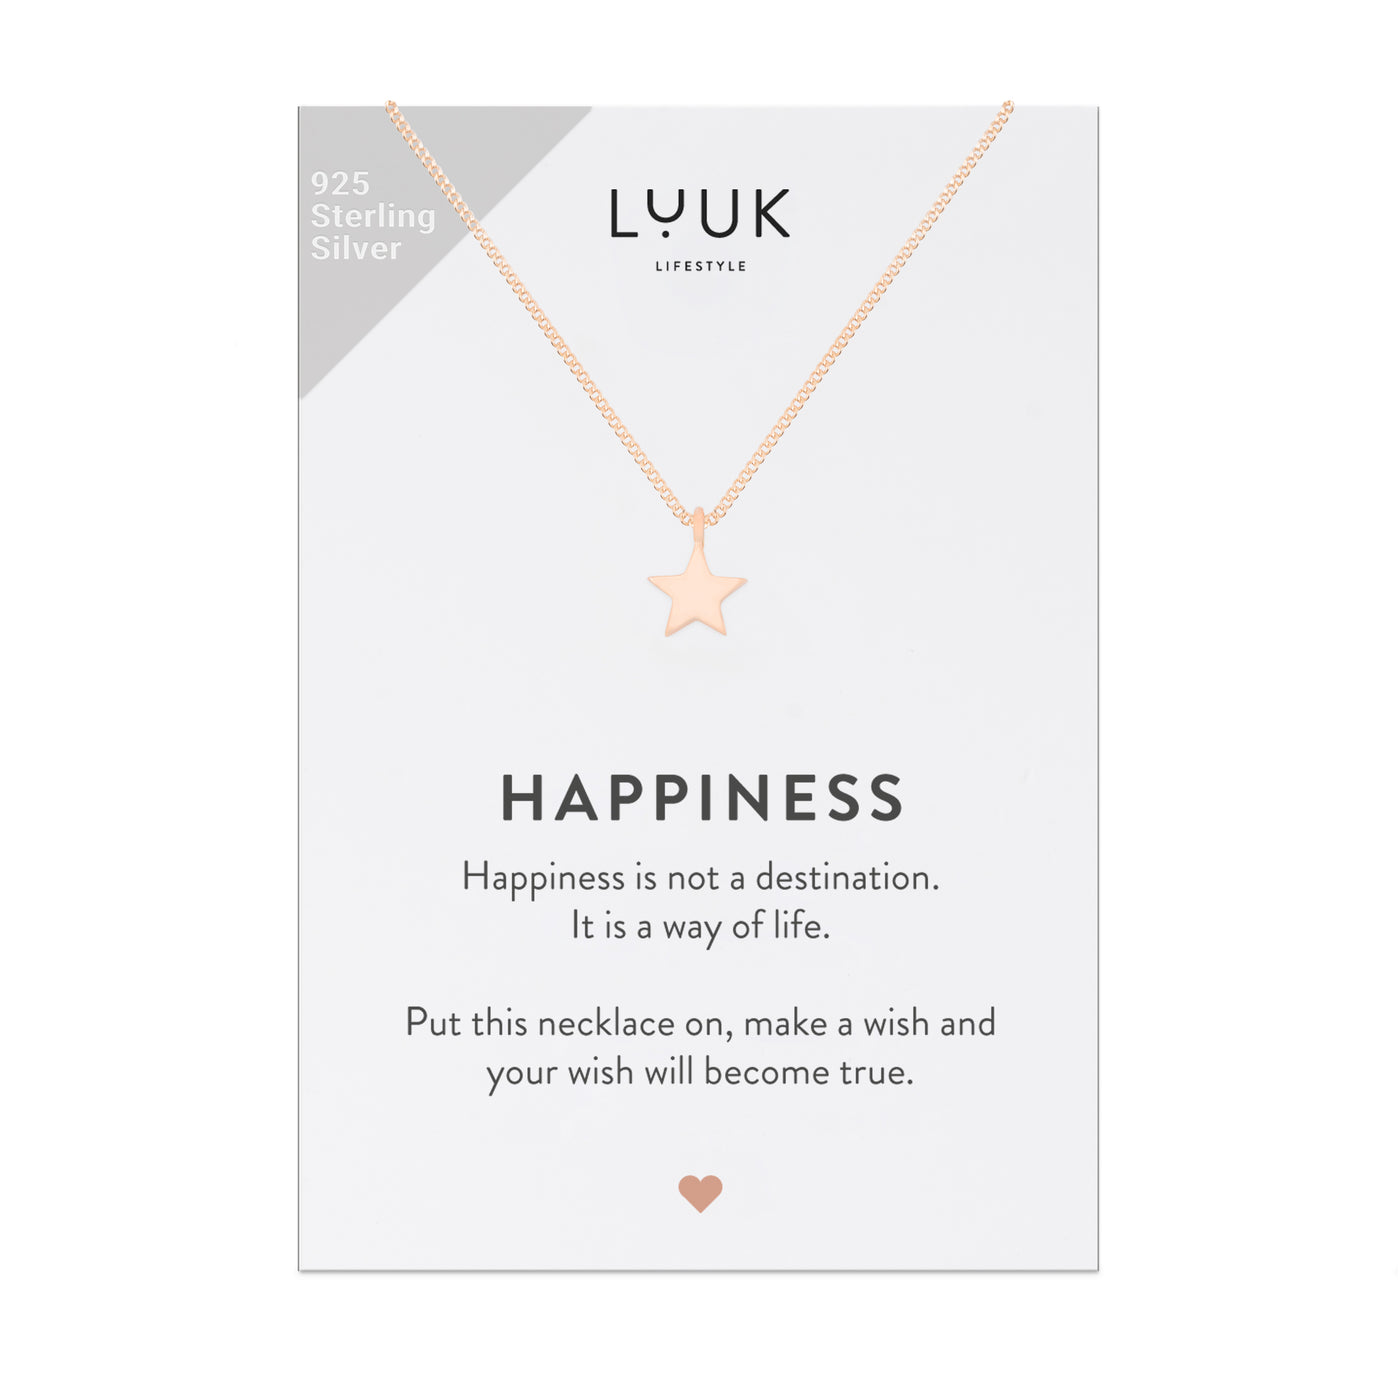 Rosegoldene Halskette mit Stern Anhänger auf Happiness Spruchkarte von Luuk Lifestyle 